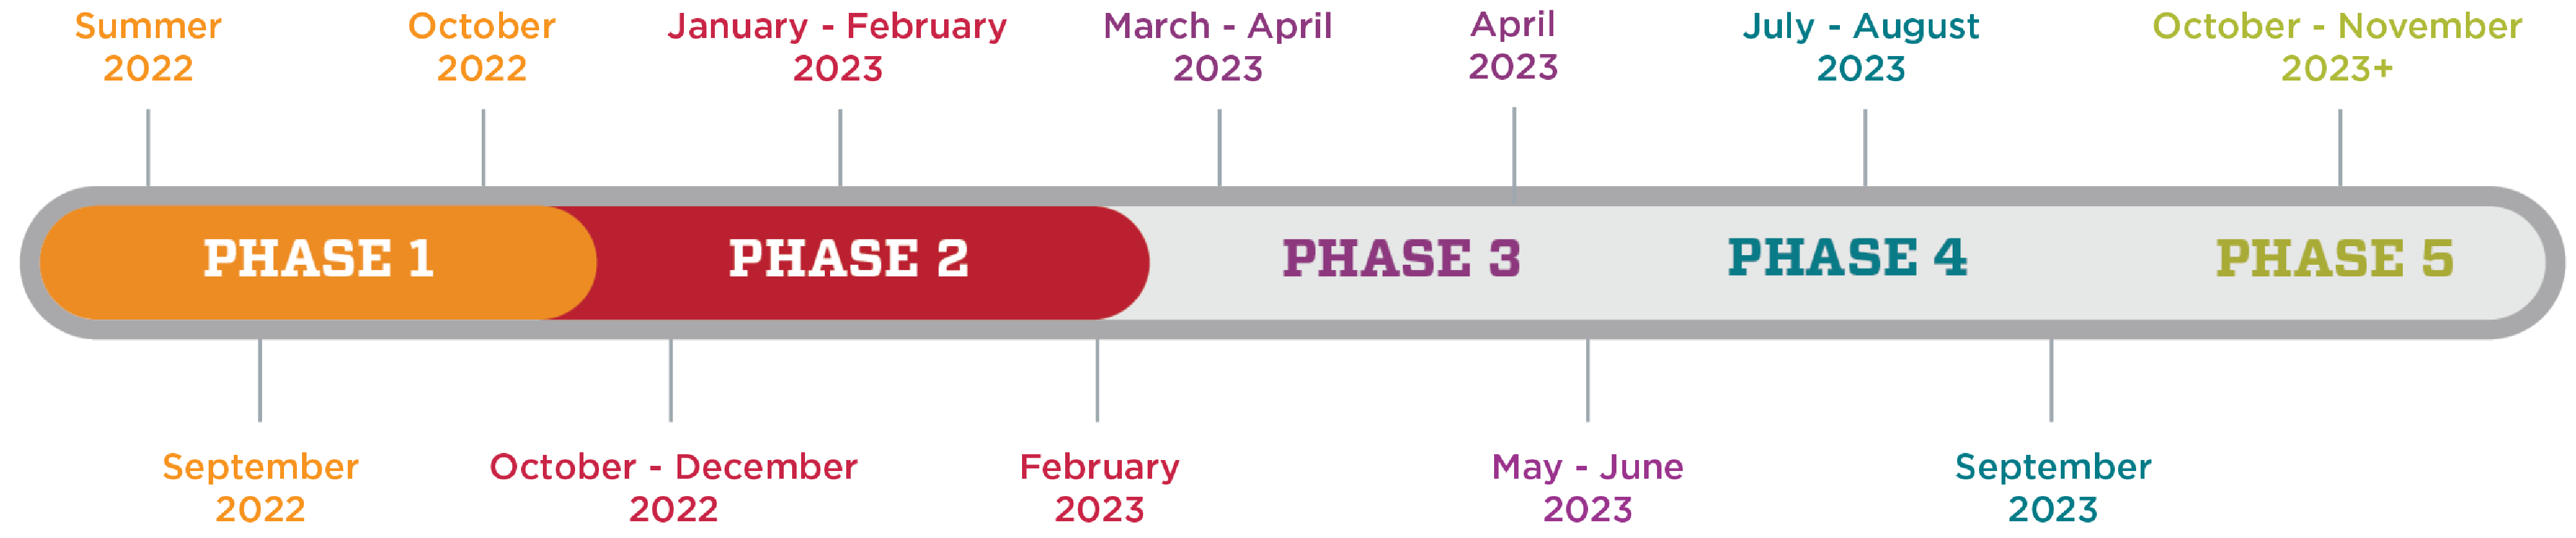 Un gráfico que muestra la línea de tiempo de la Encuesta climática de HSC. La fase 1 es del verano de 2022 a octubre de 2022. La fase 2 es de octubre de 2022 a febrero de 2023. La fase 3 es de marzo de 2023 a junio de 2023. La fase 4 es de julio de 2023 a septiembre de 2023. La fase 5 es de octubre de 2023 en adelante.